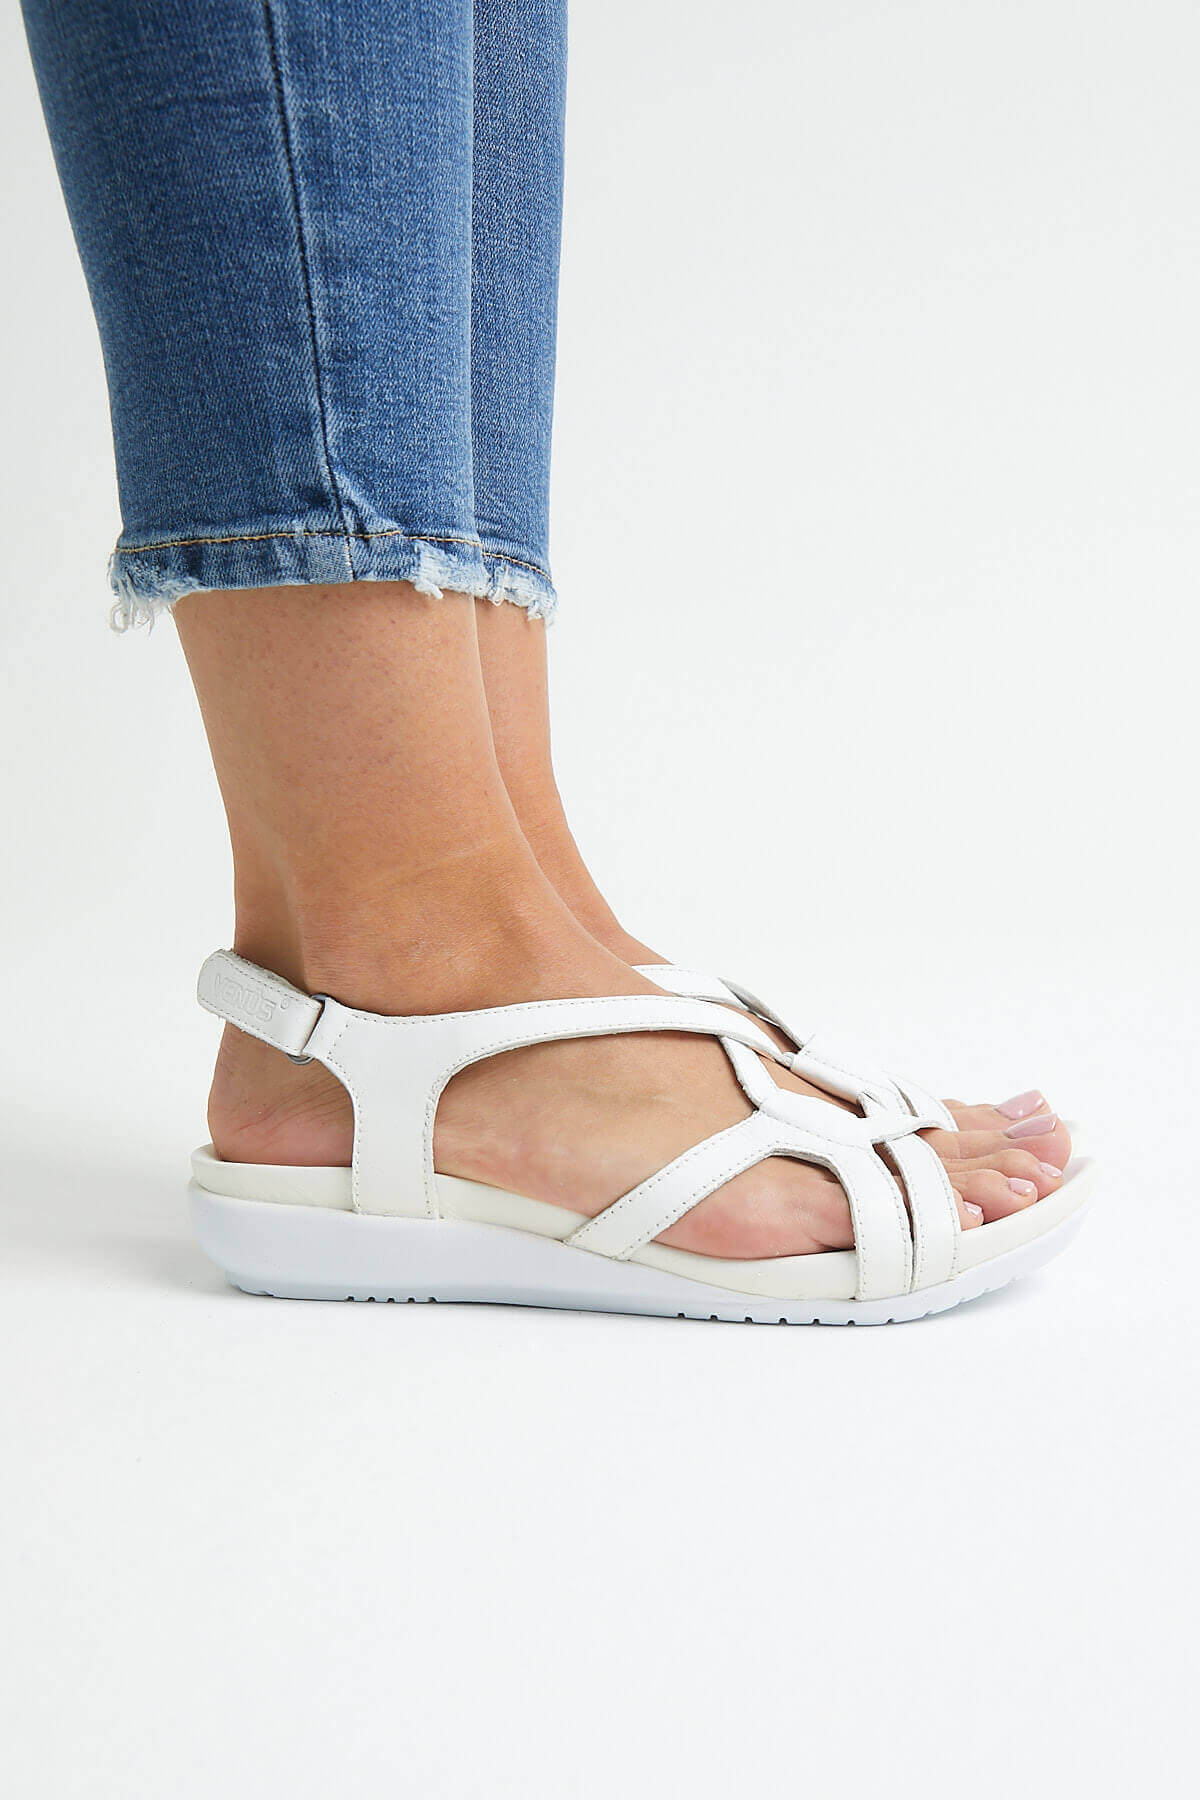 Kadın Comfort Sandalet Beyaz 206Y - Thumbnail